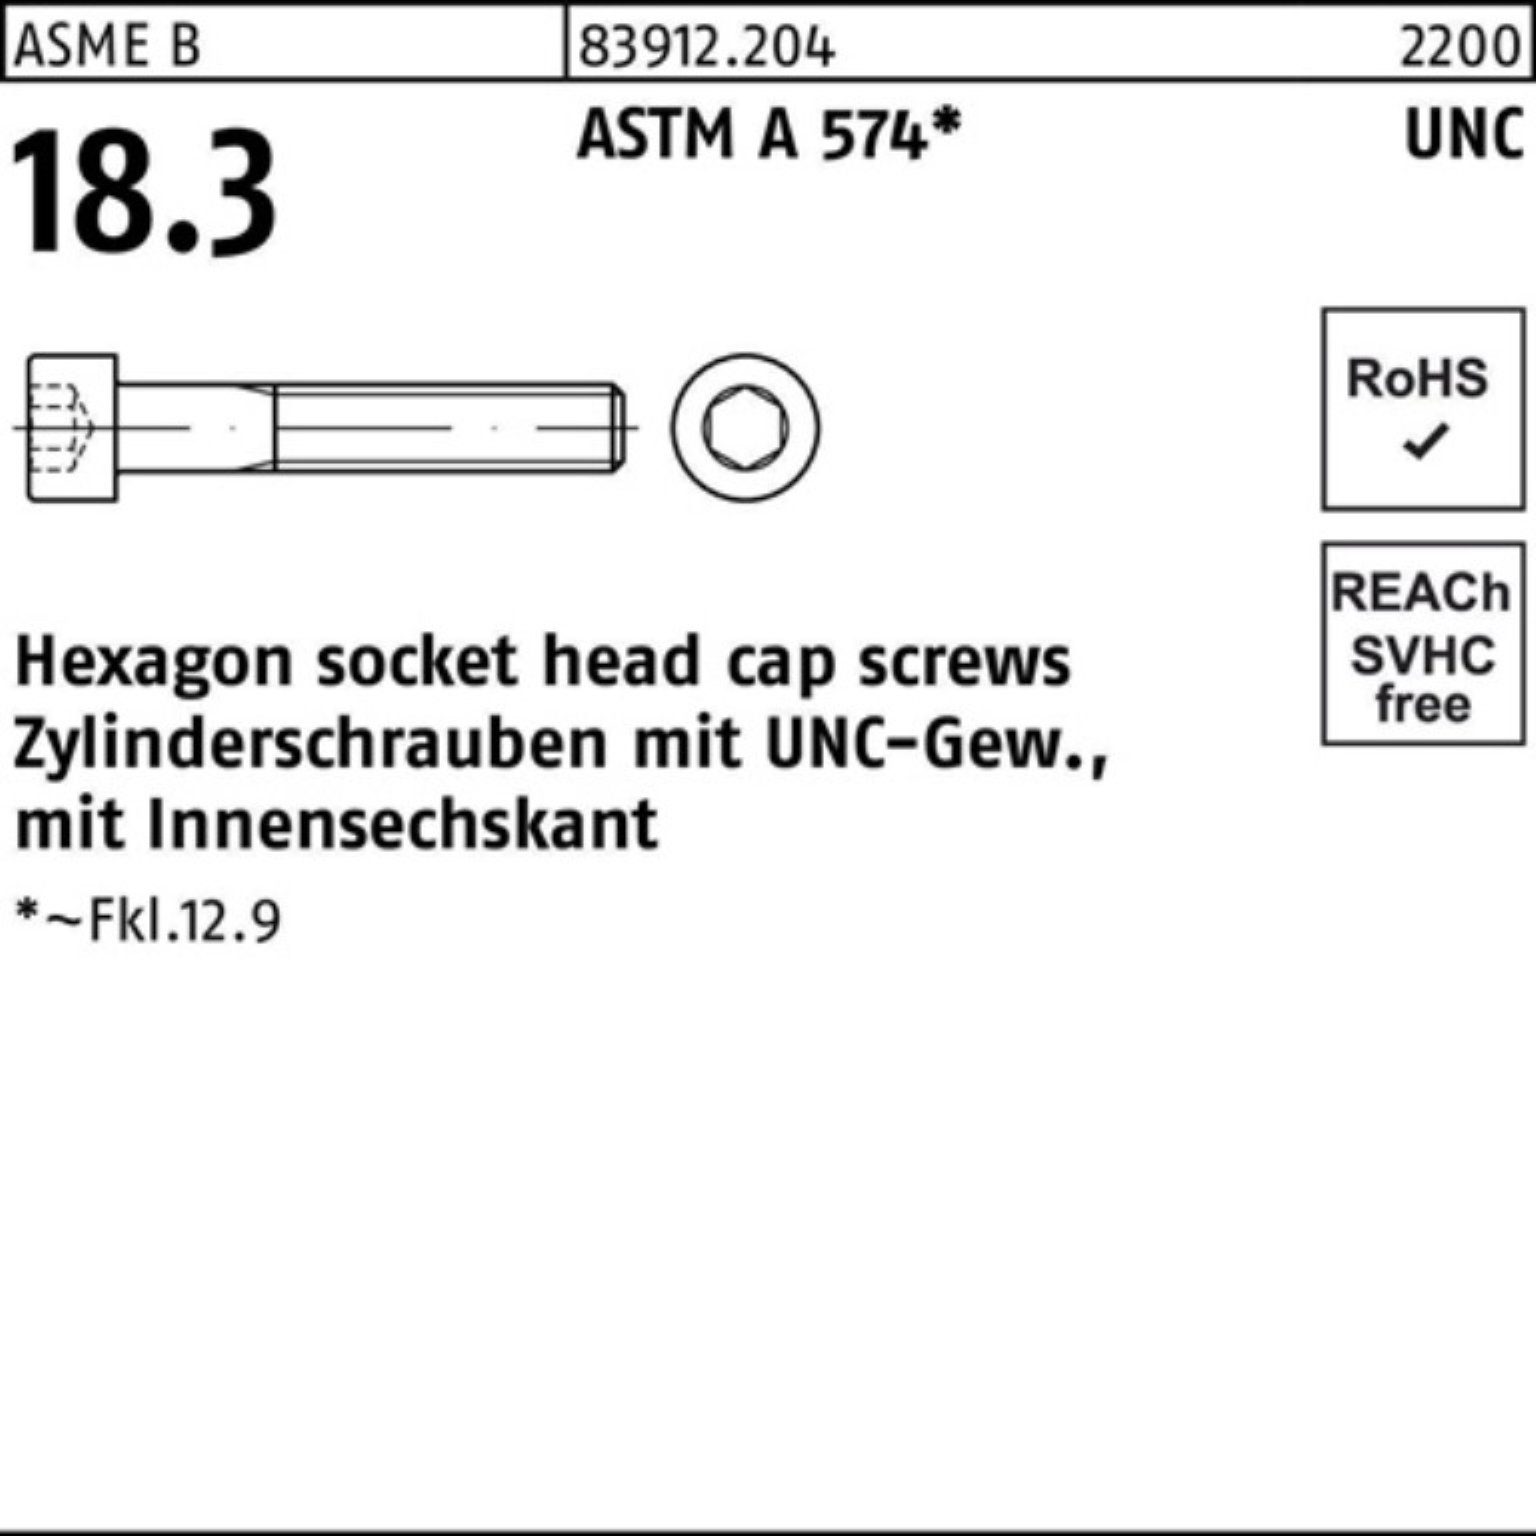 200er Zylinderschraube #2x Zylinderschraube UNC-Gewinde/Innen-6kt Reyher 1/4 R 83912 Pack ASTM